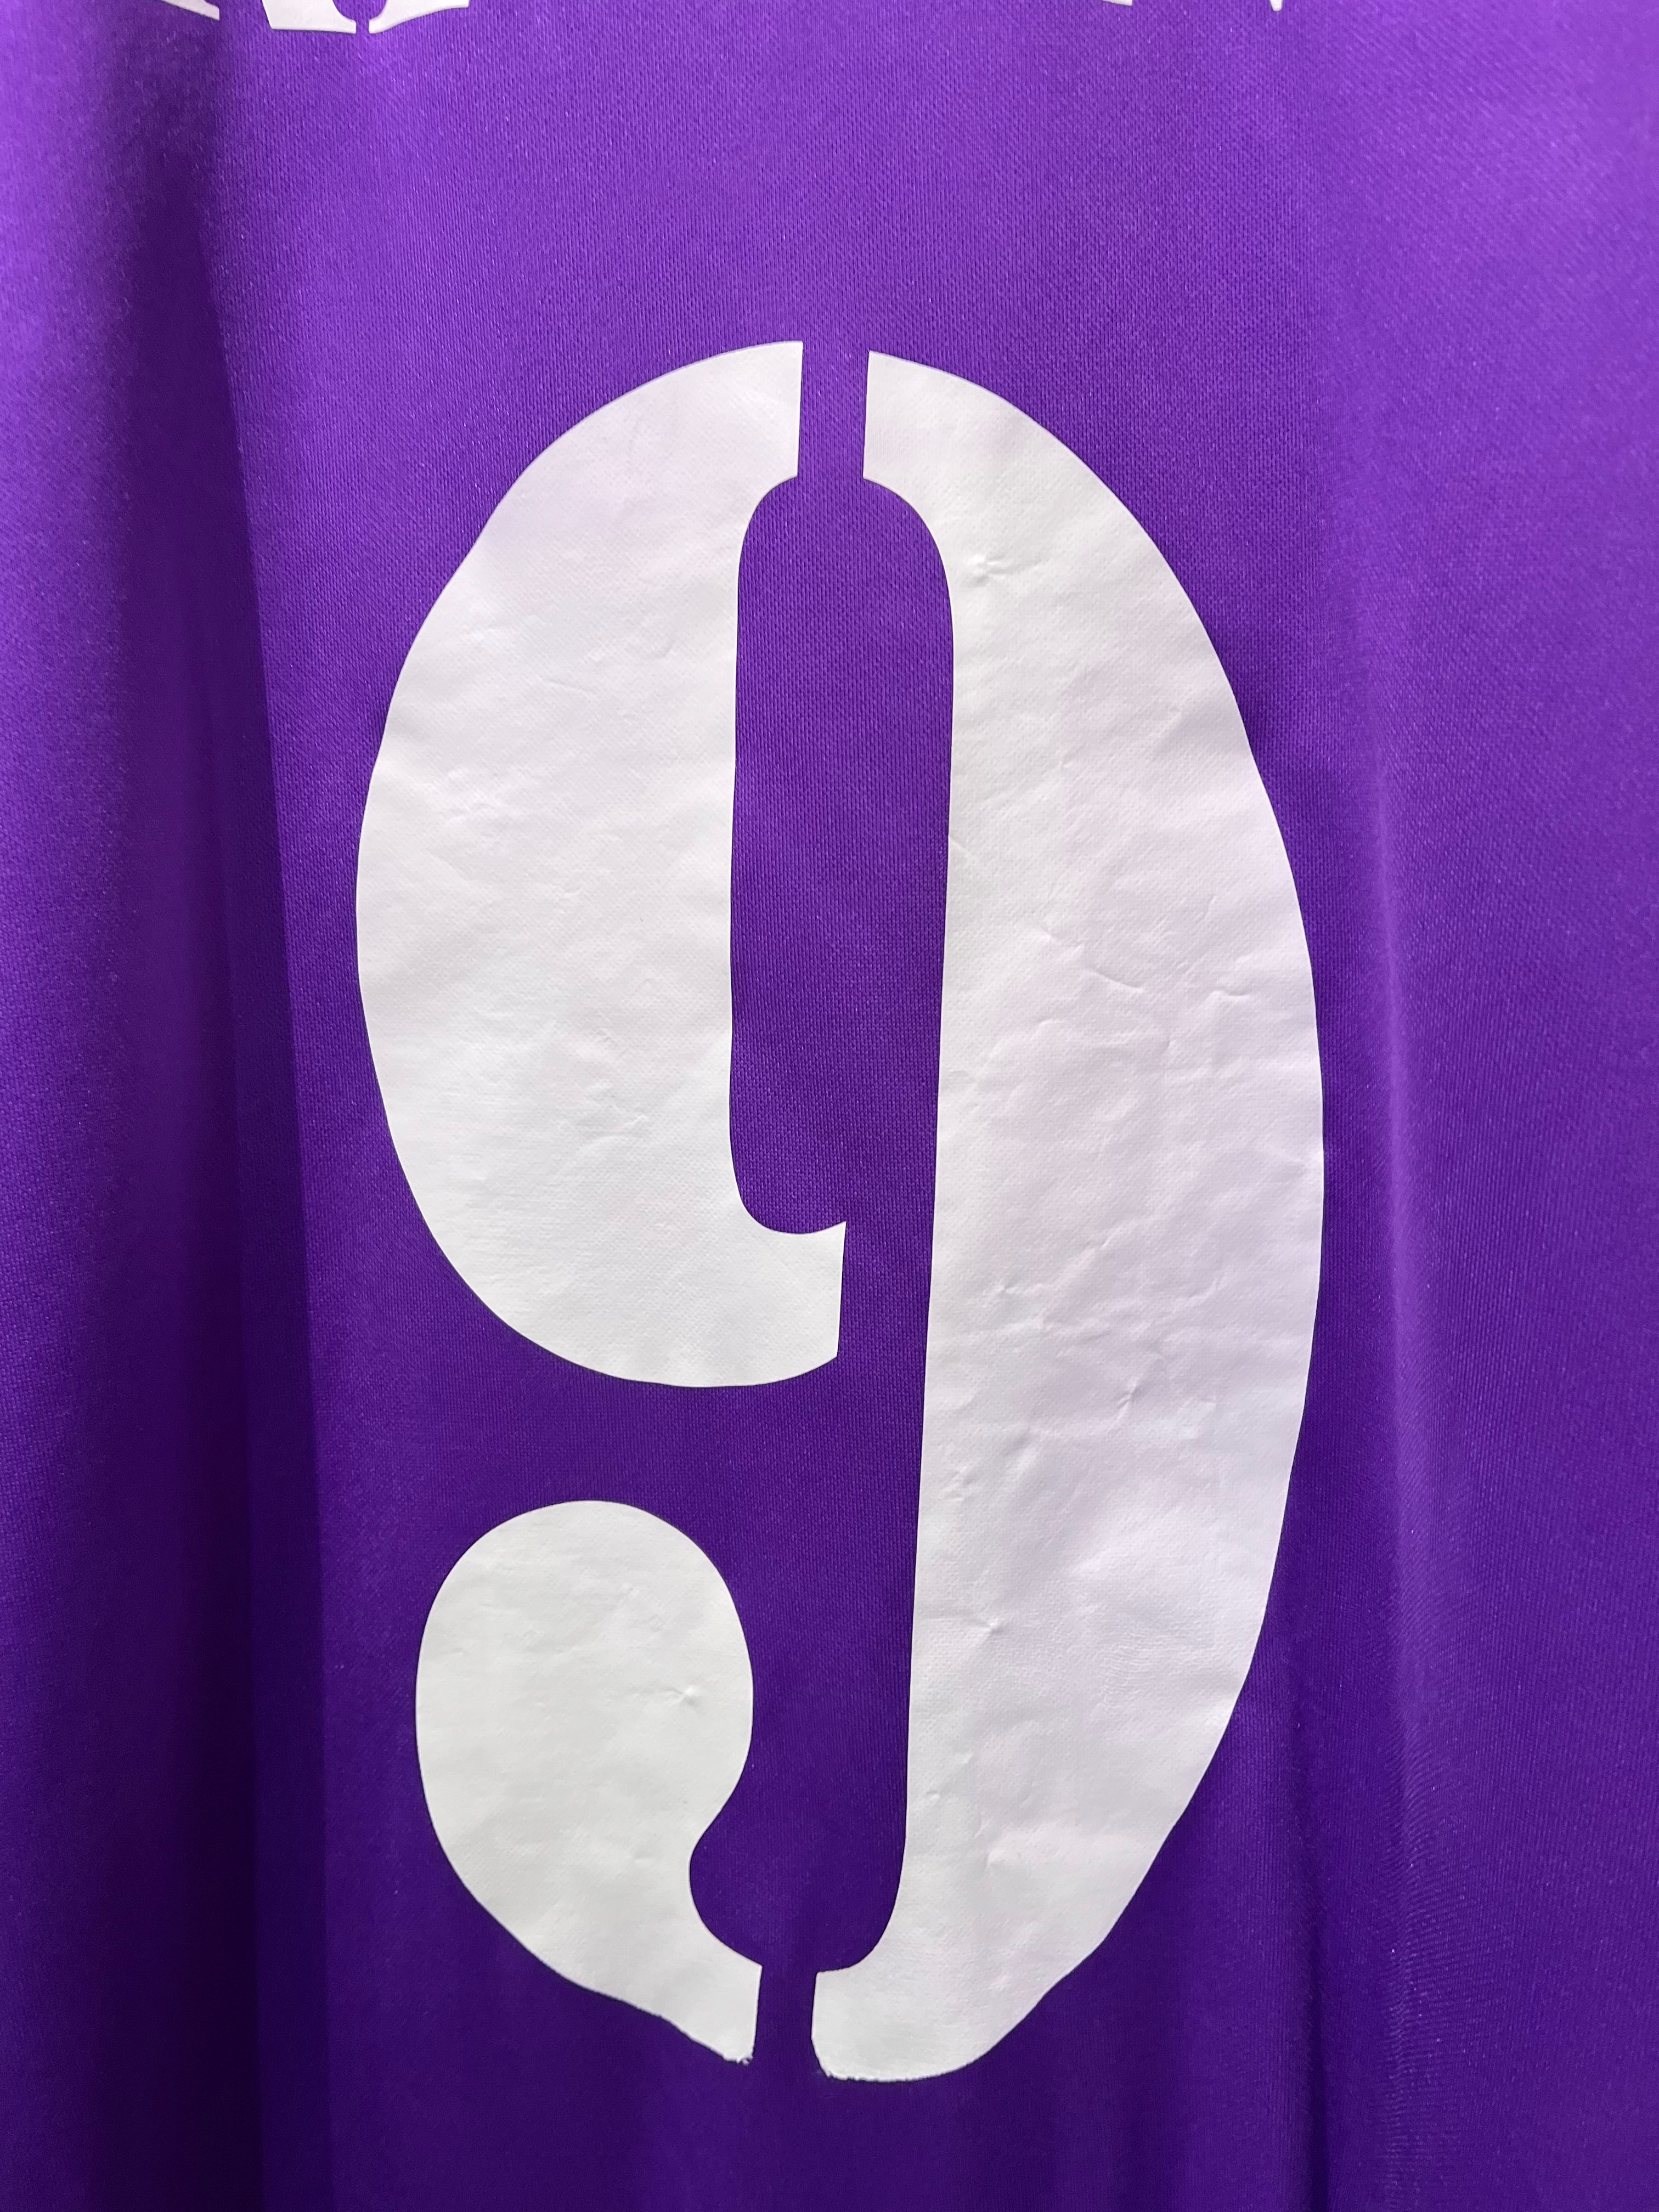 Adidas - Fiorentina 2003/04 Home Football Shirt 'RIGANO'